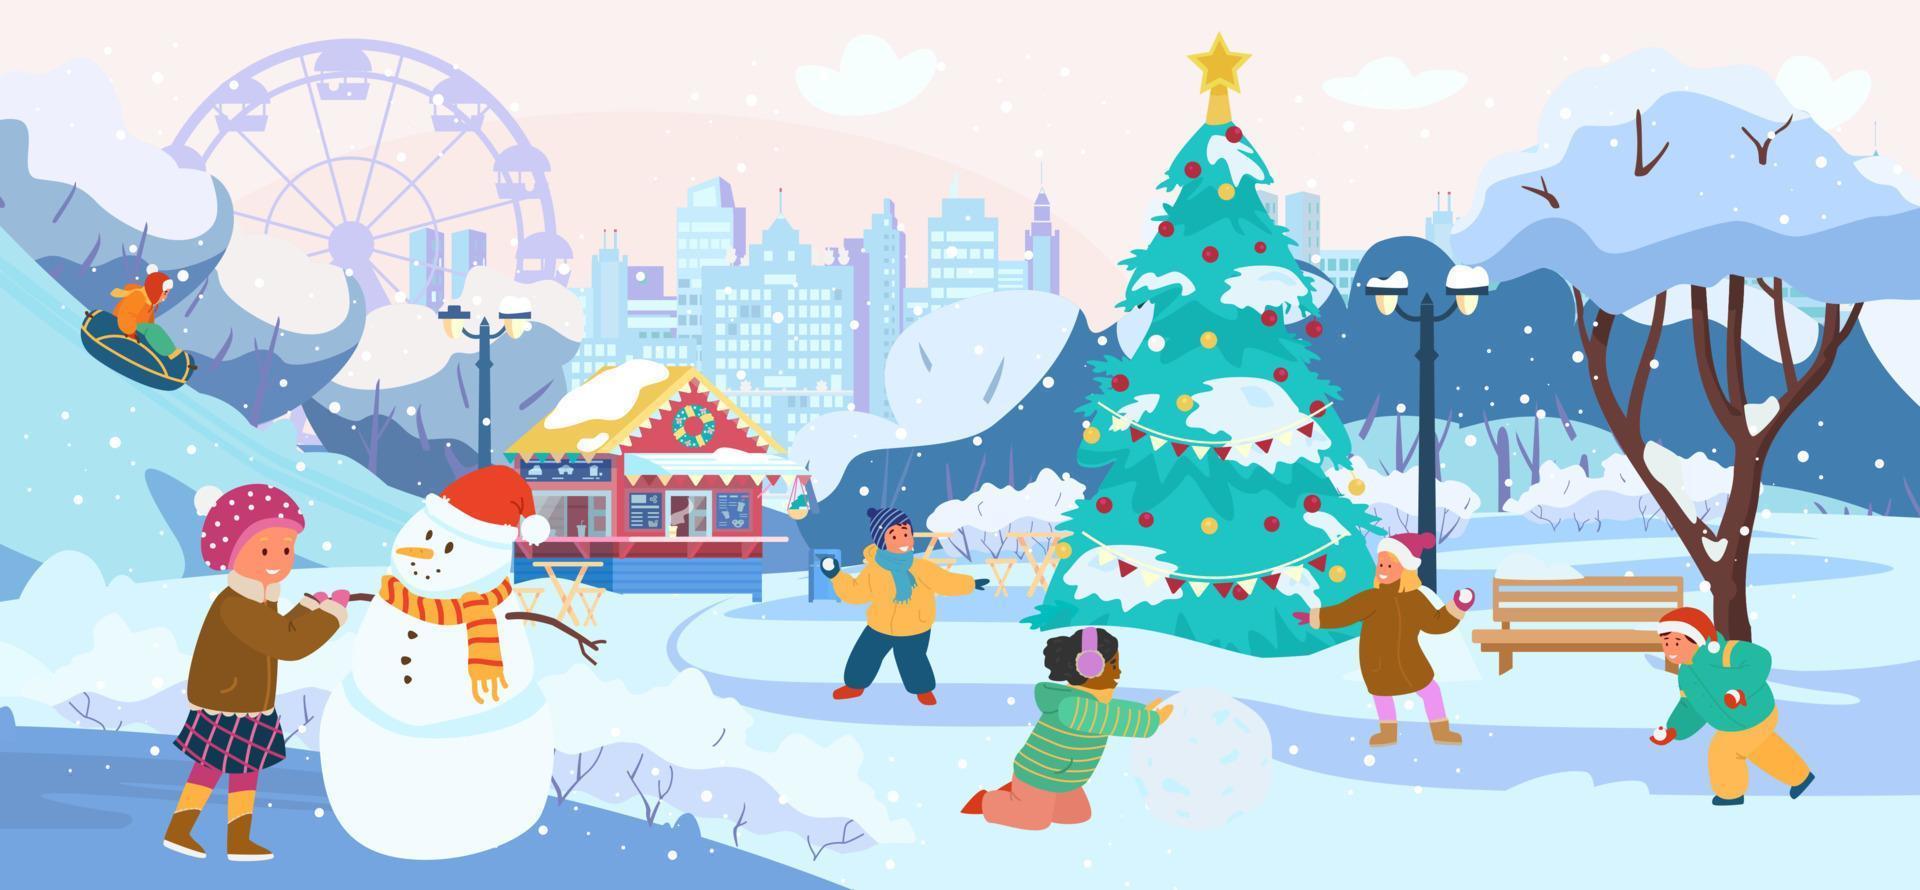 winterparklandschaft mit kindern, die schneebälle spielen, schneemann bauen, snowtubing fahren. parkcafé, stadtsilhouette, weihnachtsbaum, schneebedeckte bäume. flache vektorillustration. vektor